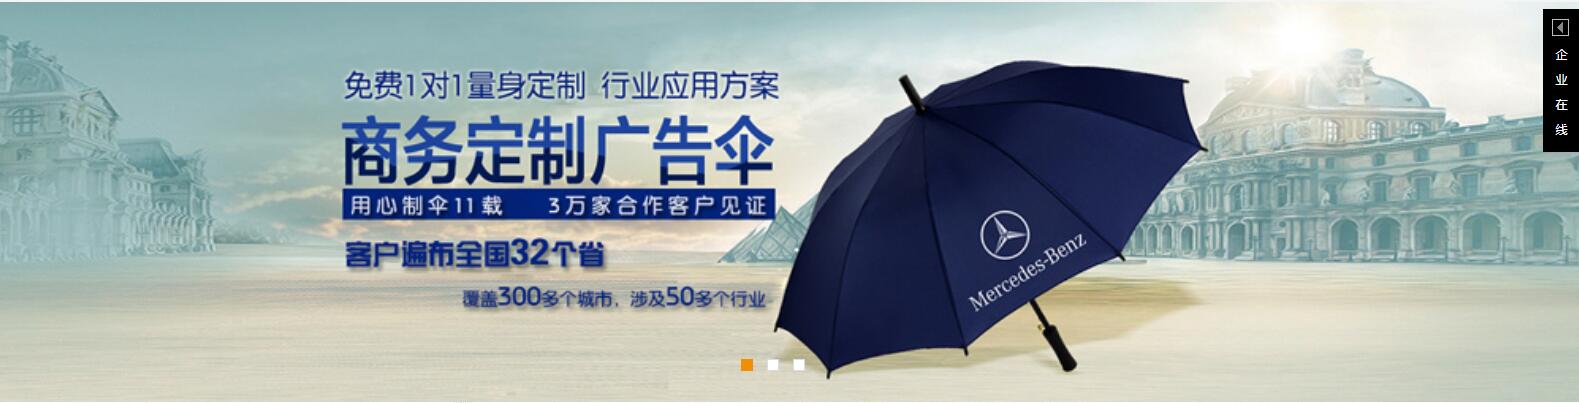 重庆雨伞批发 重庆太阳伞定做 重庆广告雨伞价格